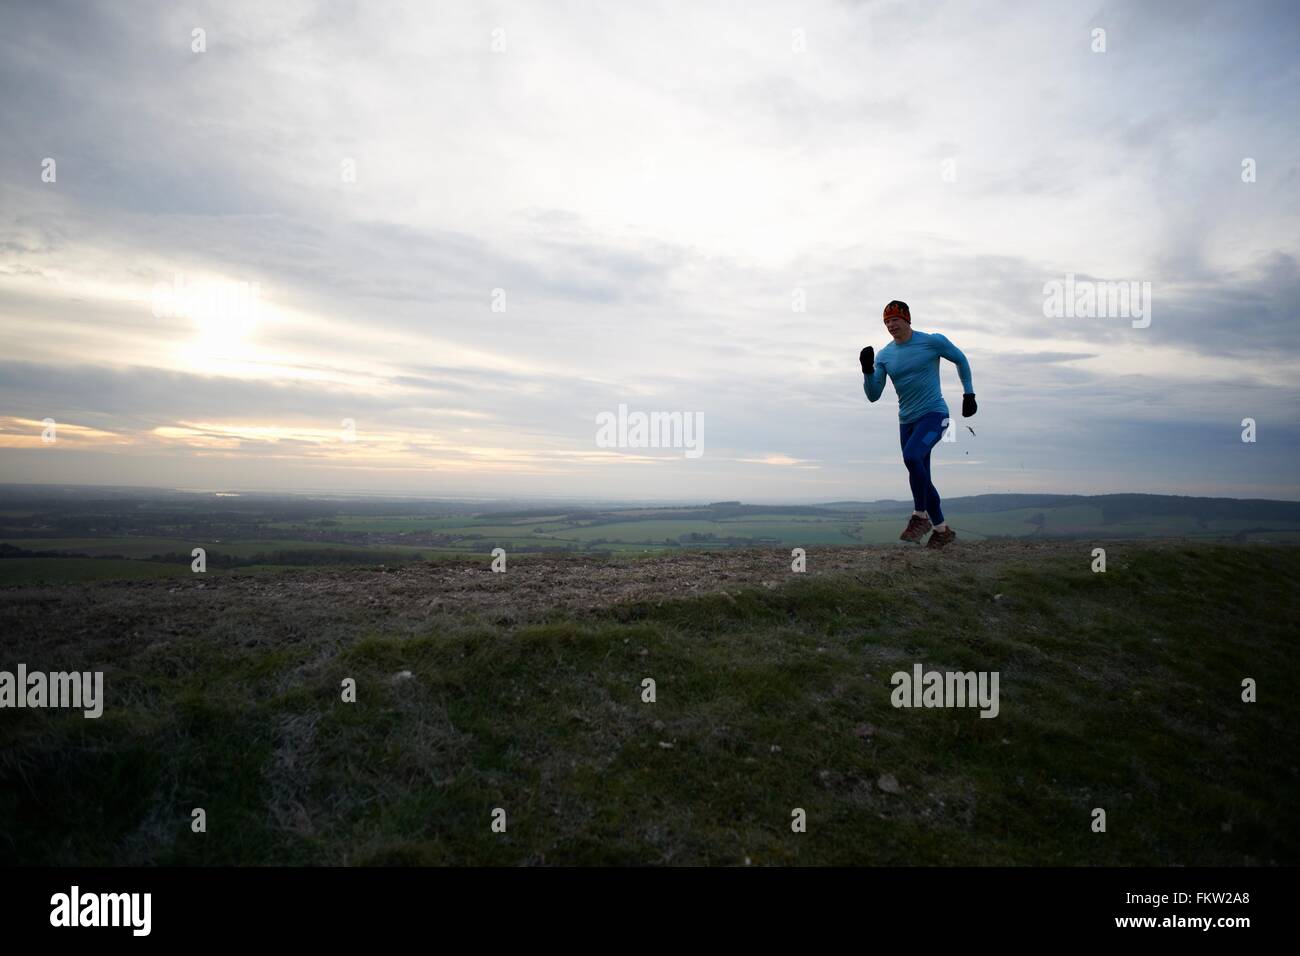 Full length view of fell runner running against dramatic sky Stock Photo